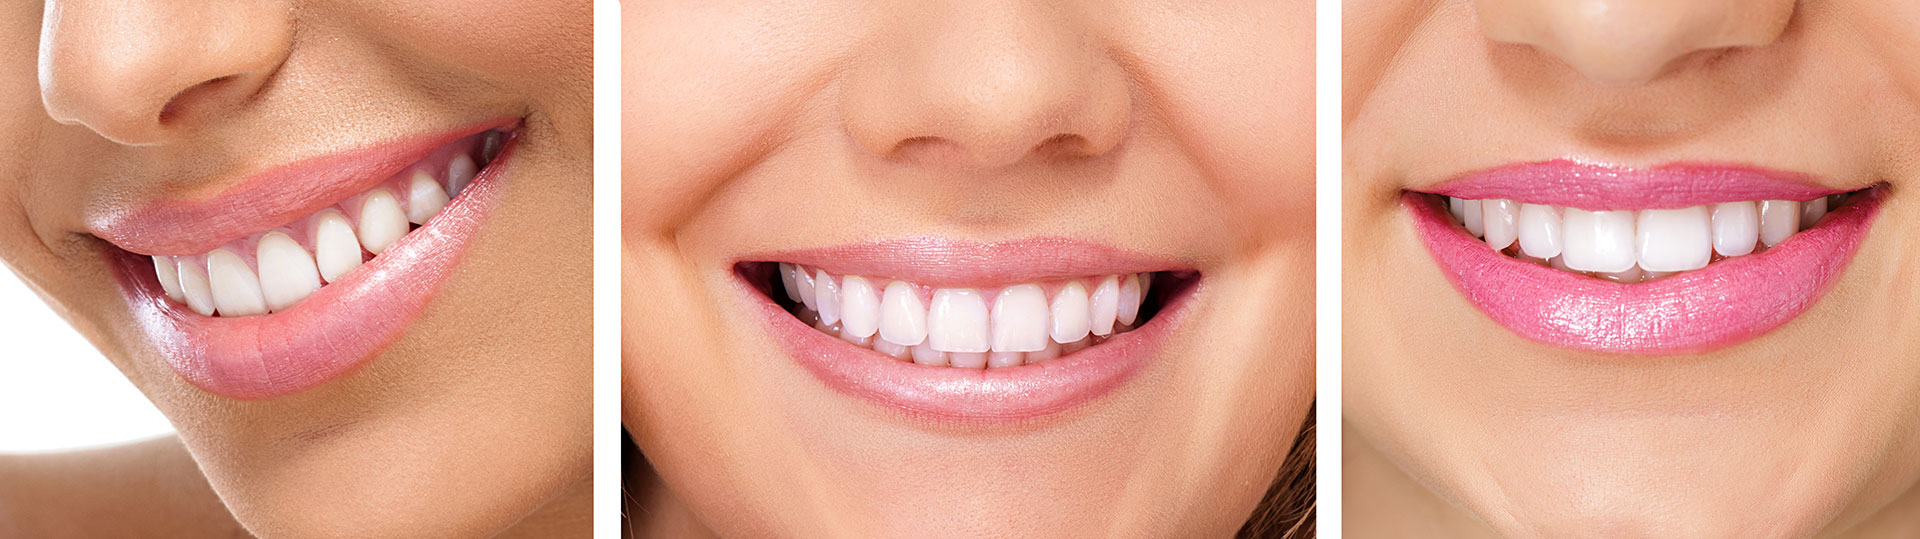 Гигиена зубов и полости рта